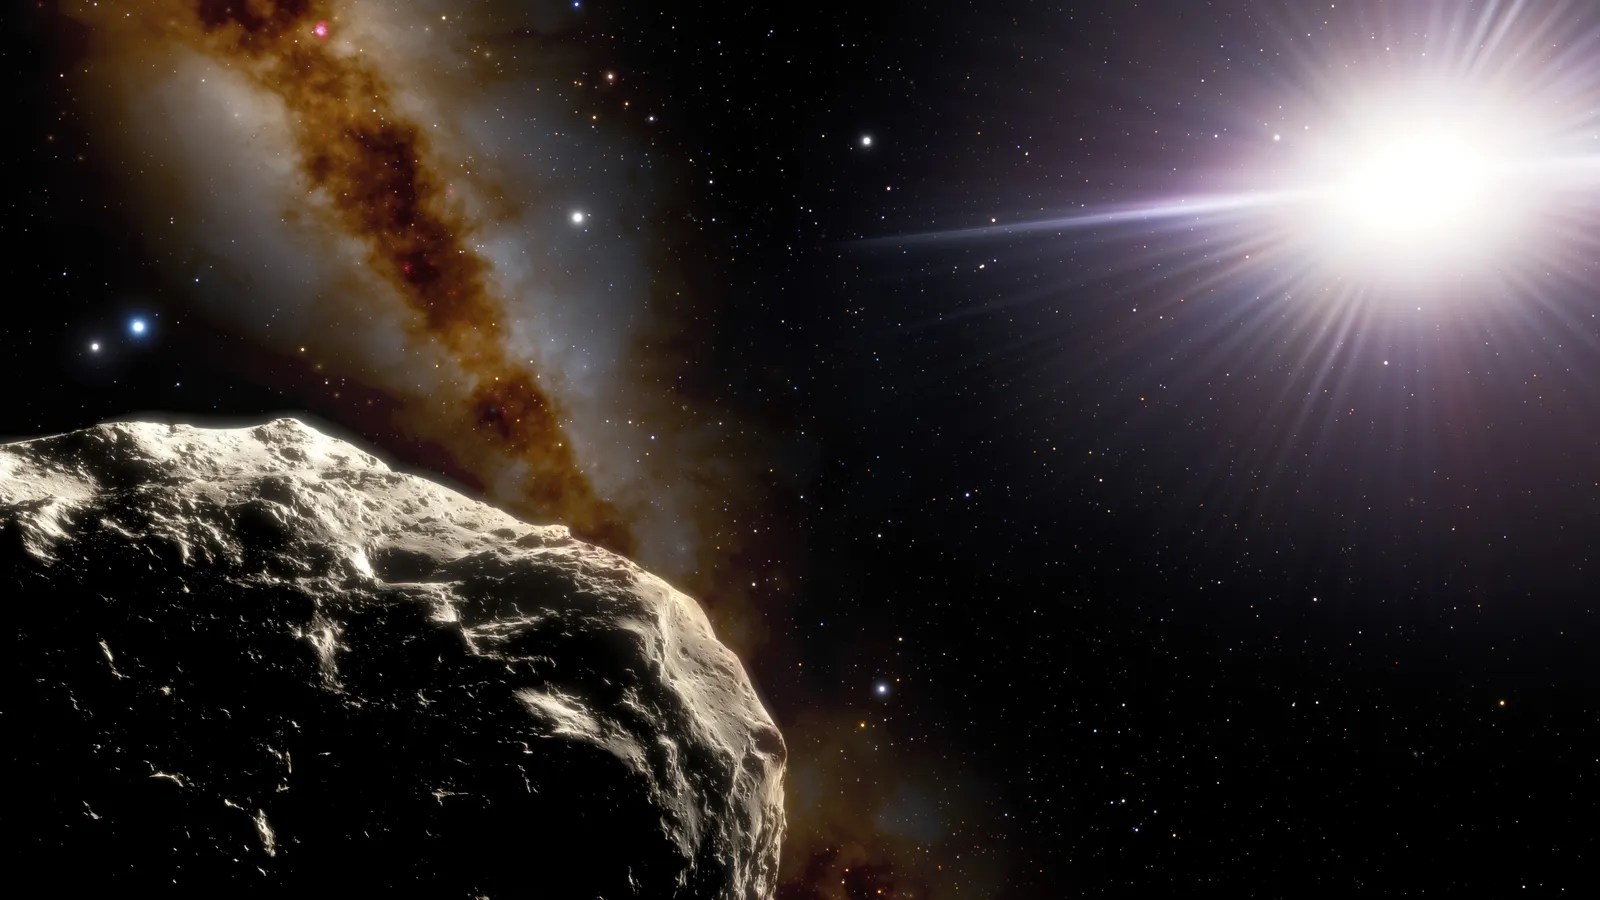 Esploriamo la recente osservazione di due asteroidi NEA che hanno catturato l'attenzione degli astronomi